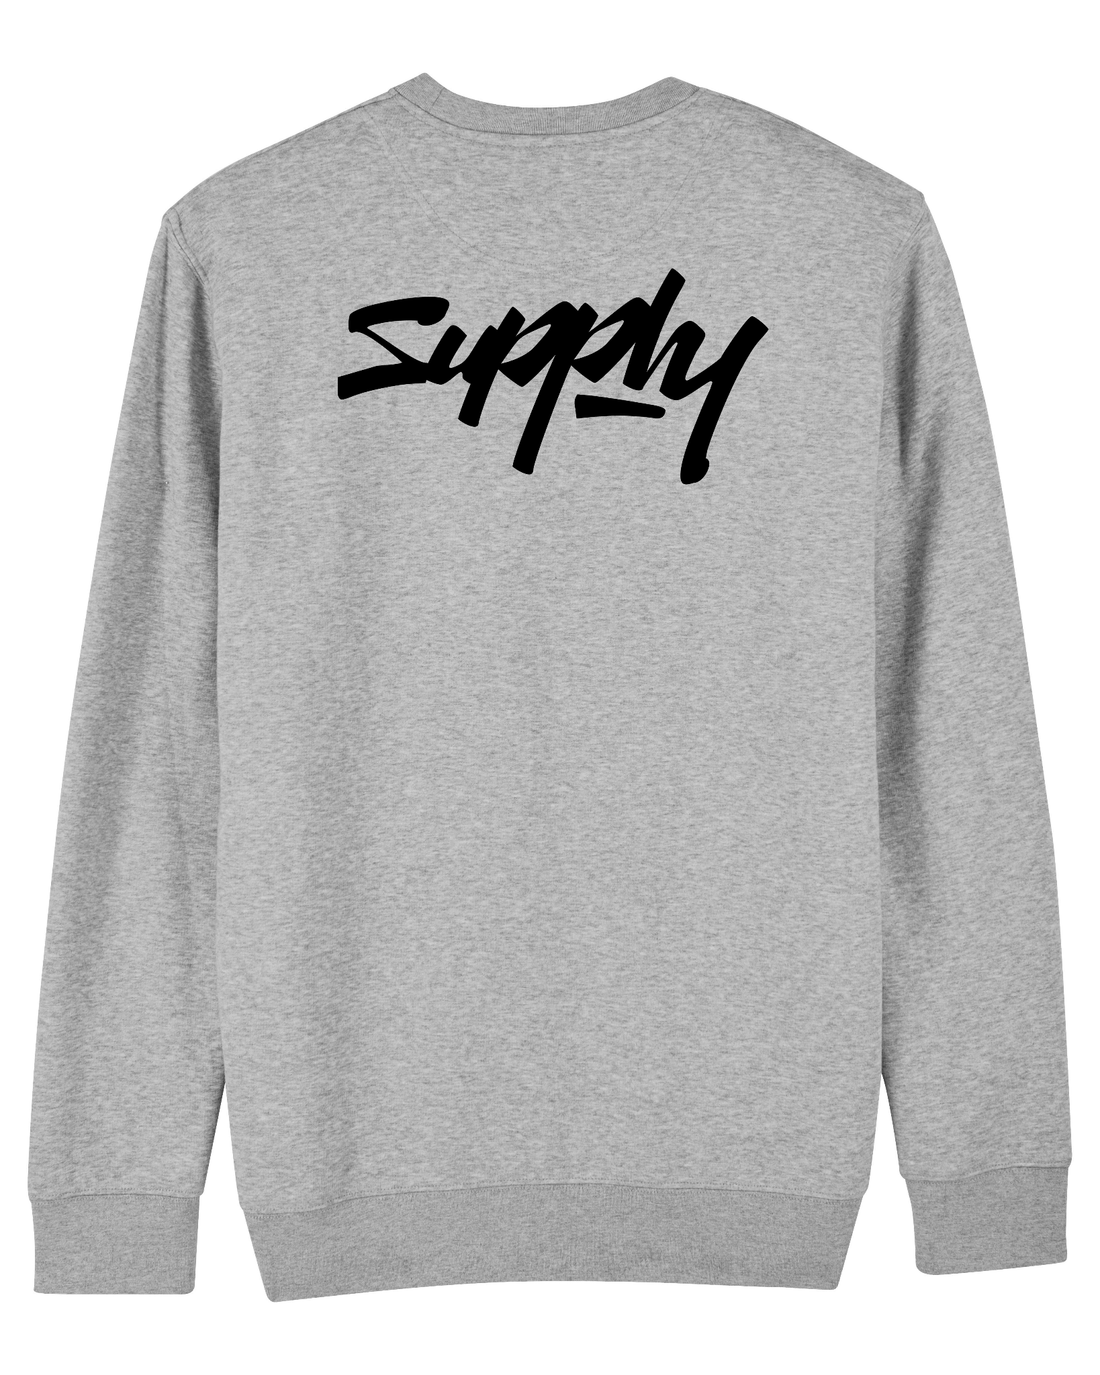 Grey Skater Sweatshirt, Supply V2 Back Print